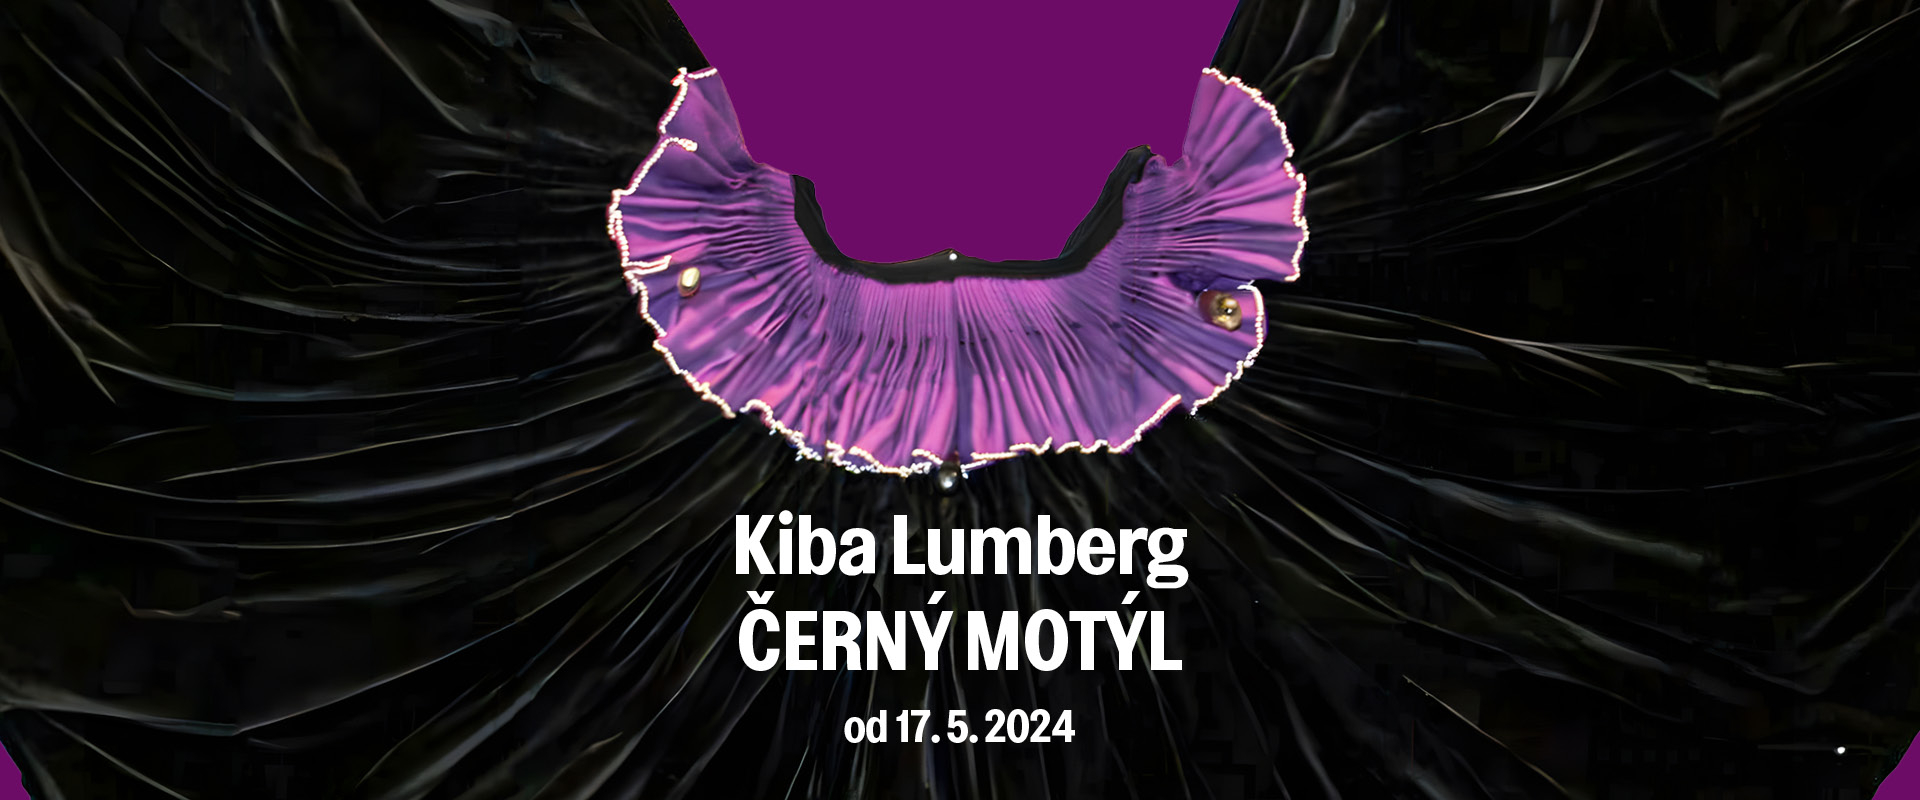 Kiba Lumberg - Černý motýl 17. 5. 2024